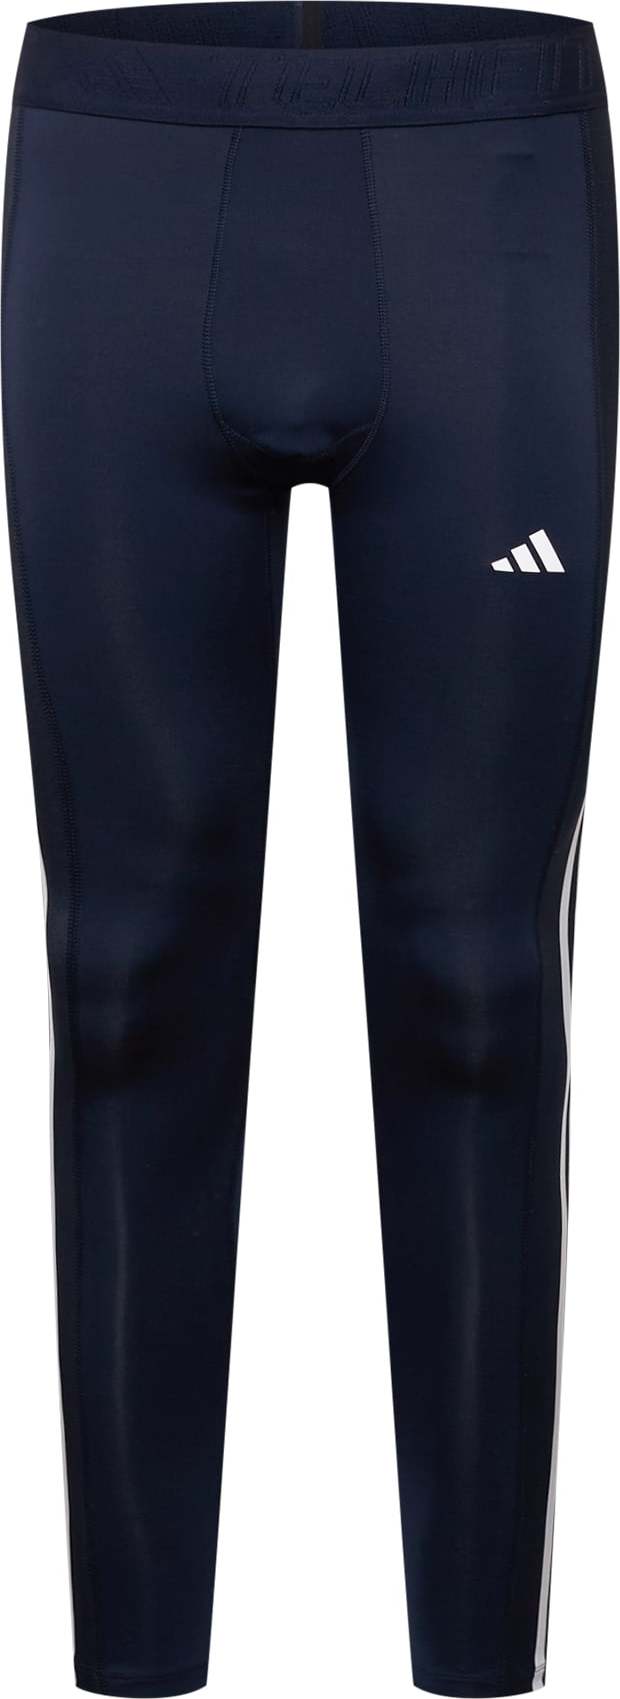 ADIDAS PERFORMANCE Sportovní kalhoty tmavě modrá / šedá / bílá